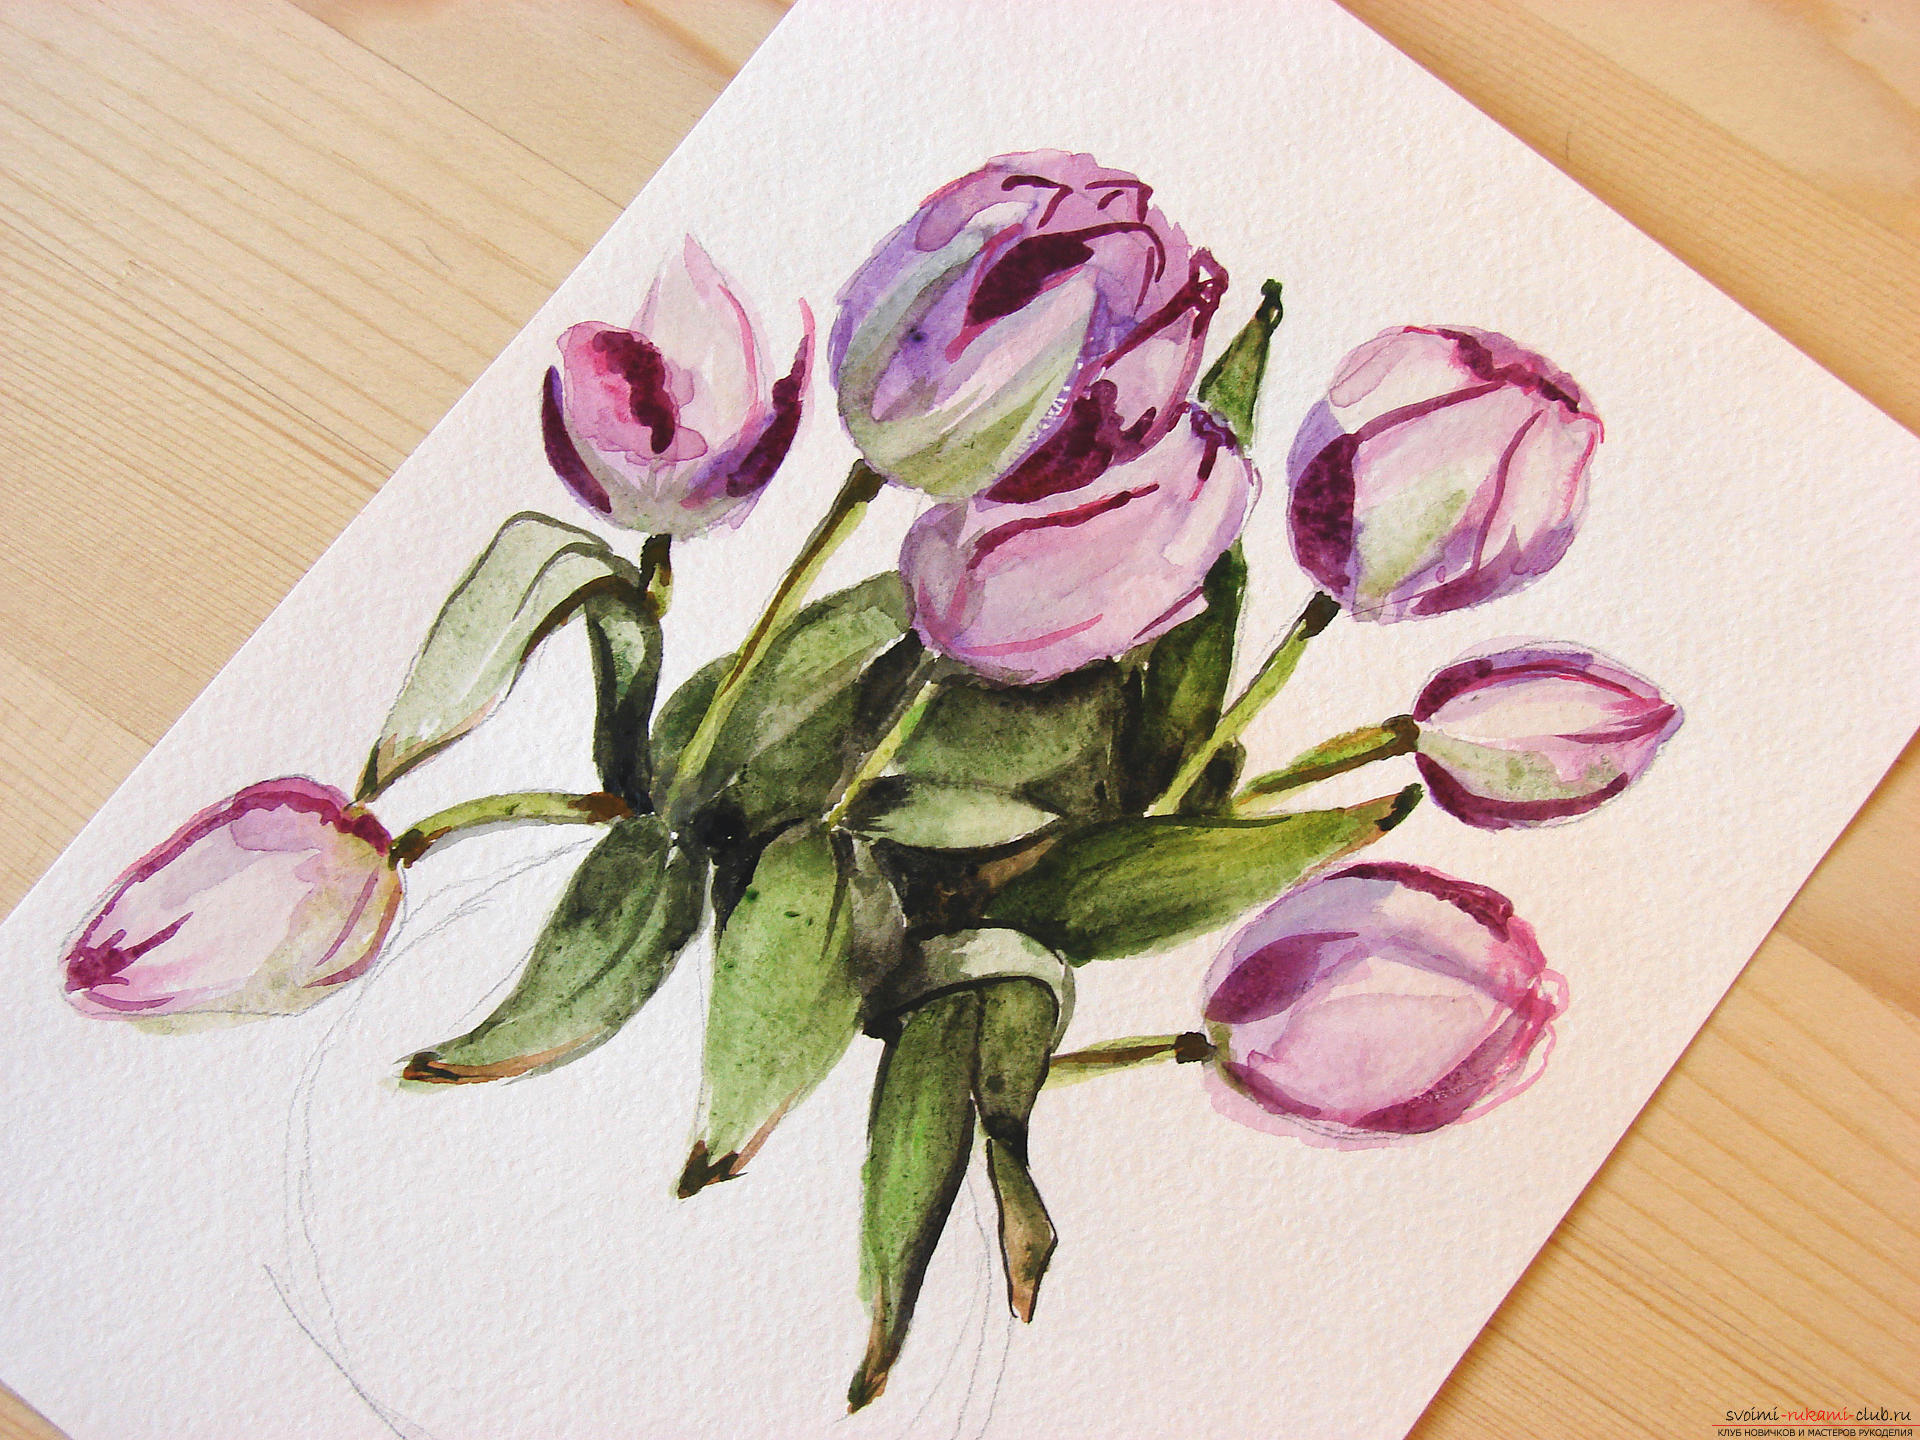 Мастер-класс по рисованию с фото научит как нарисовать цветы, подробно описав как рисуются тюльпаны поэтапно.. Фото №19